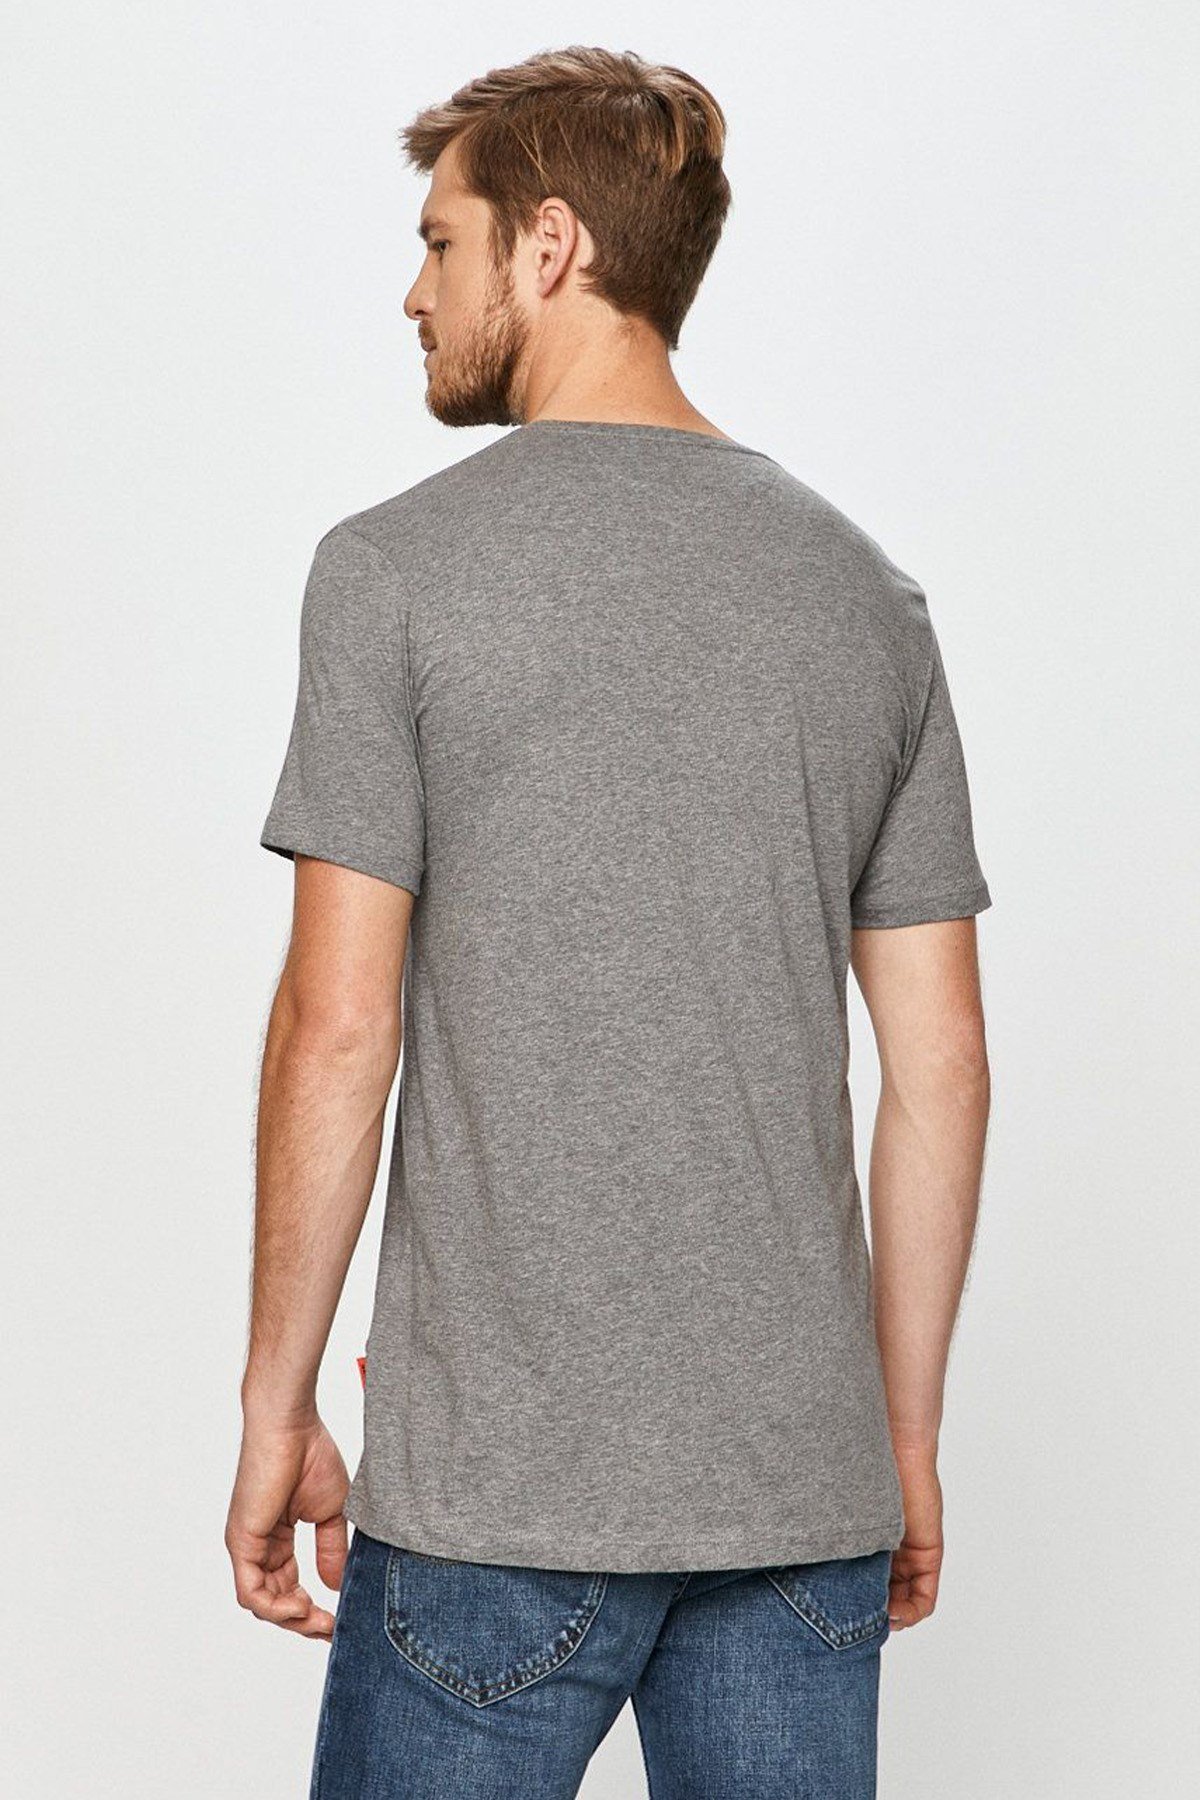 Erkek Baskılı T-Shirt | JOHN FRANK Baskılı Tişört Modelleri